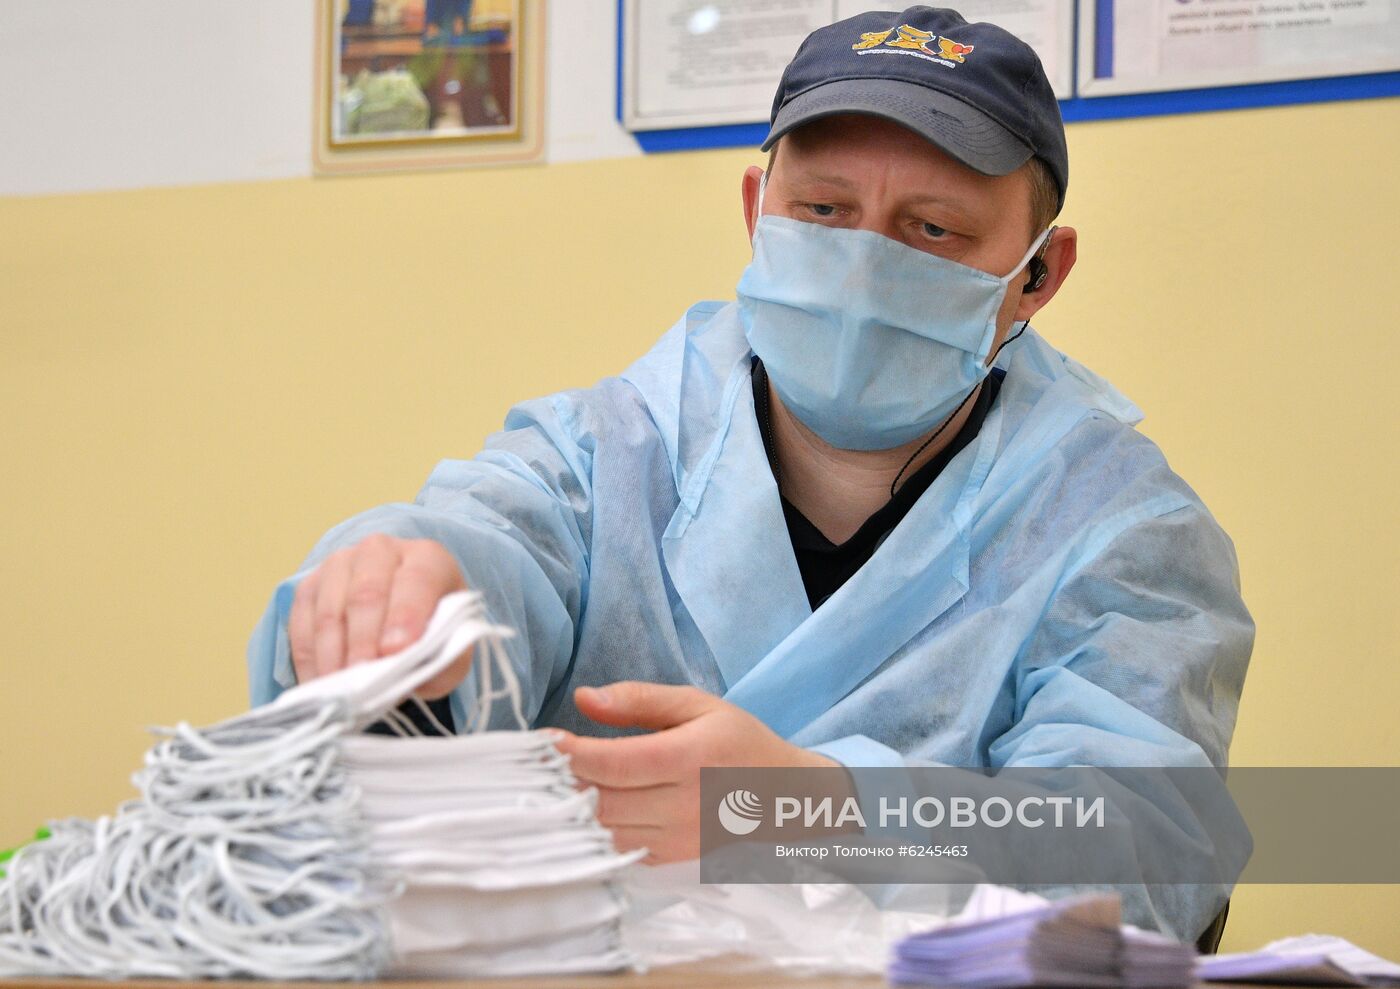 Пошив защитных масок в Минске